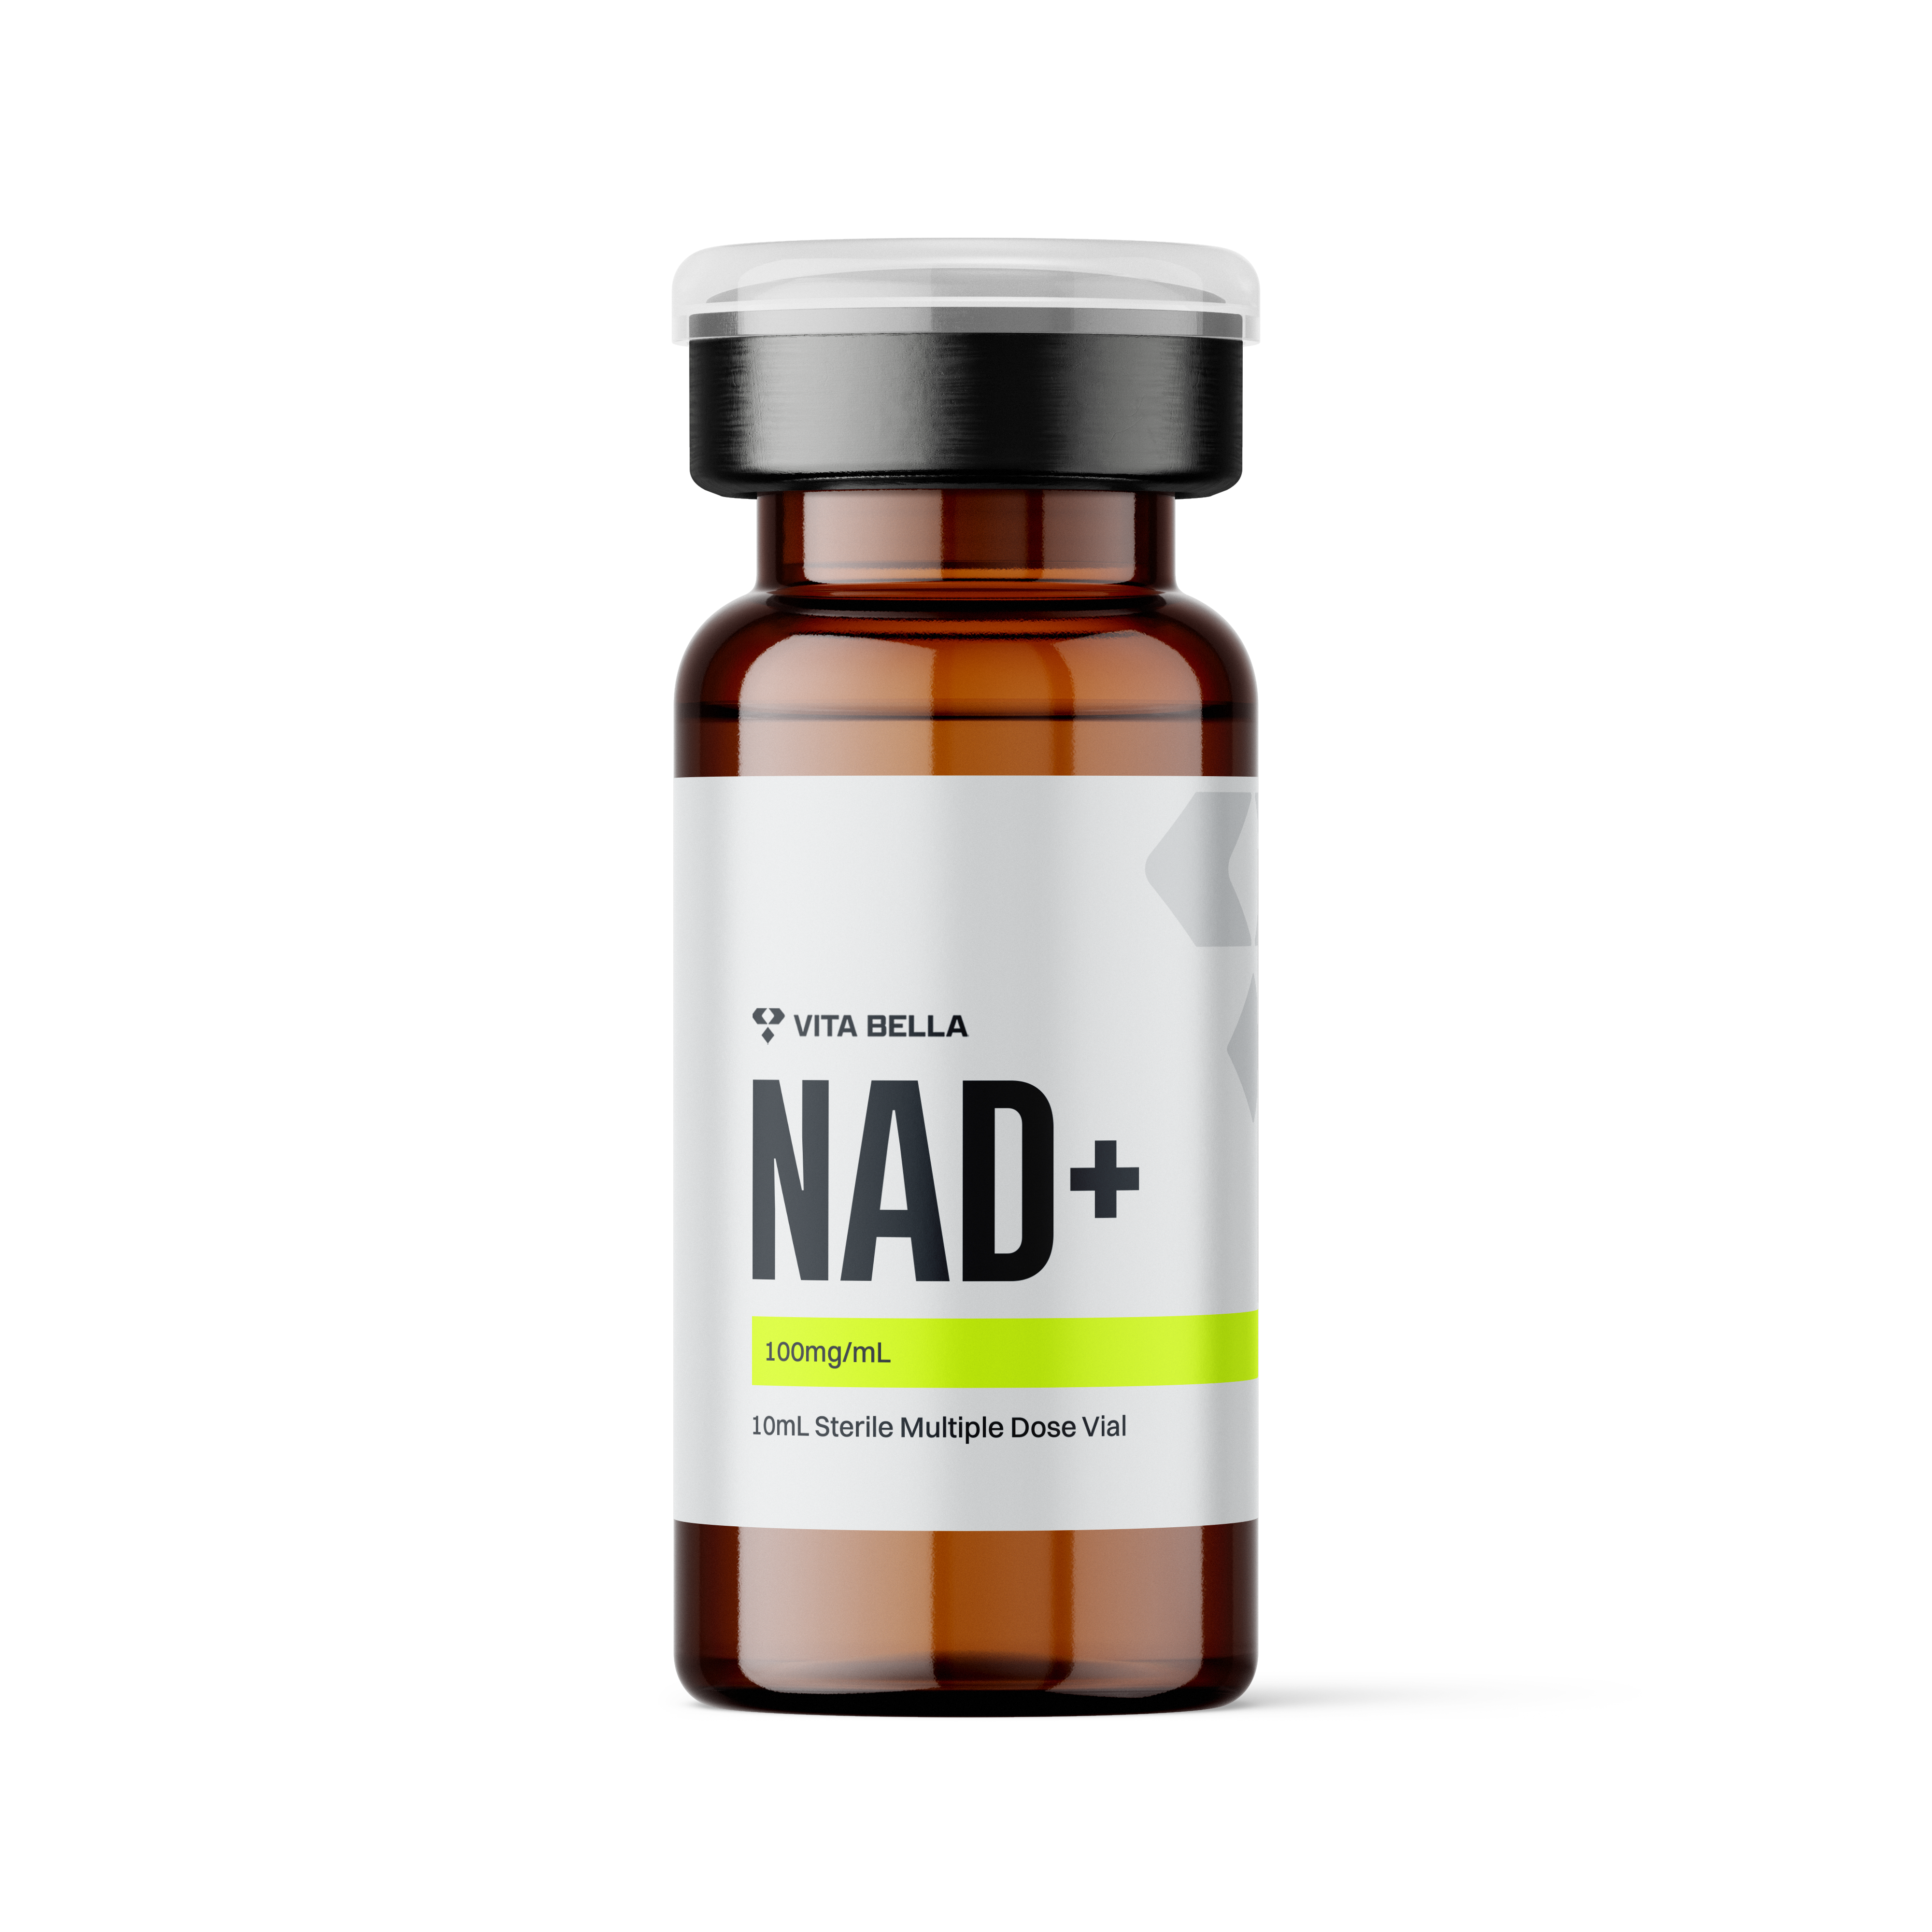 NAD+ vial